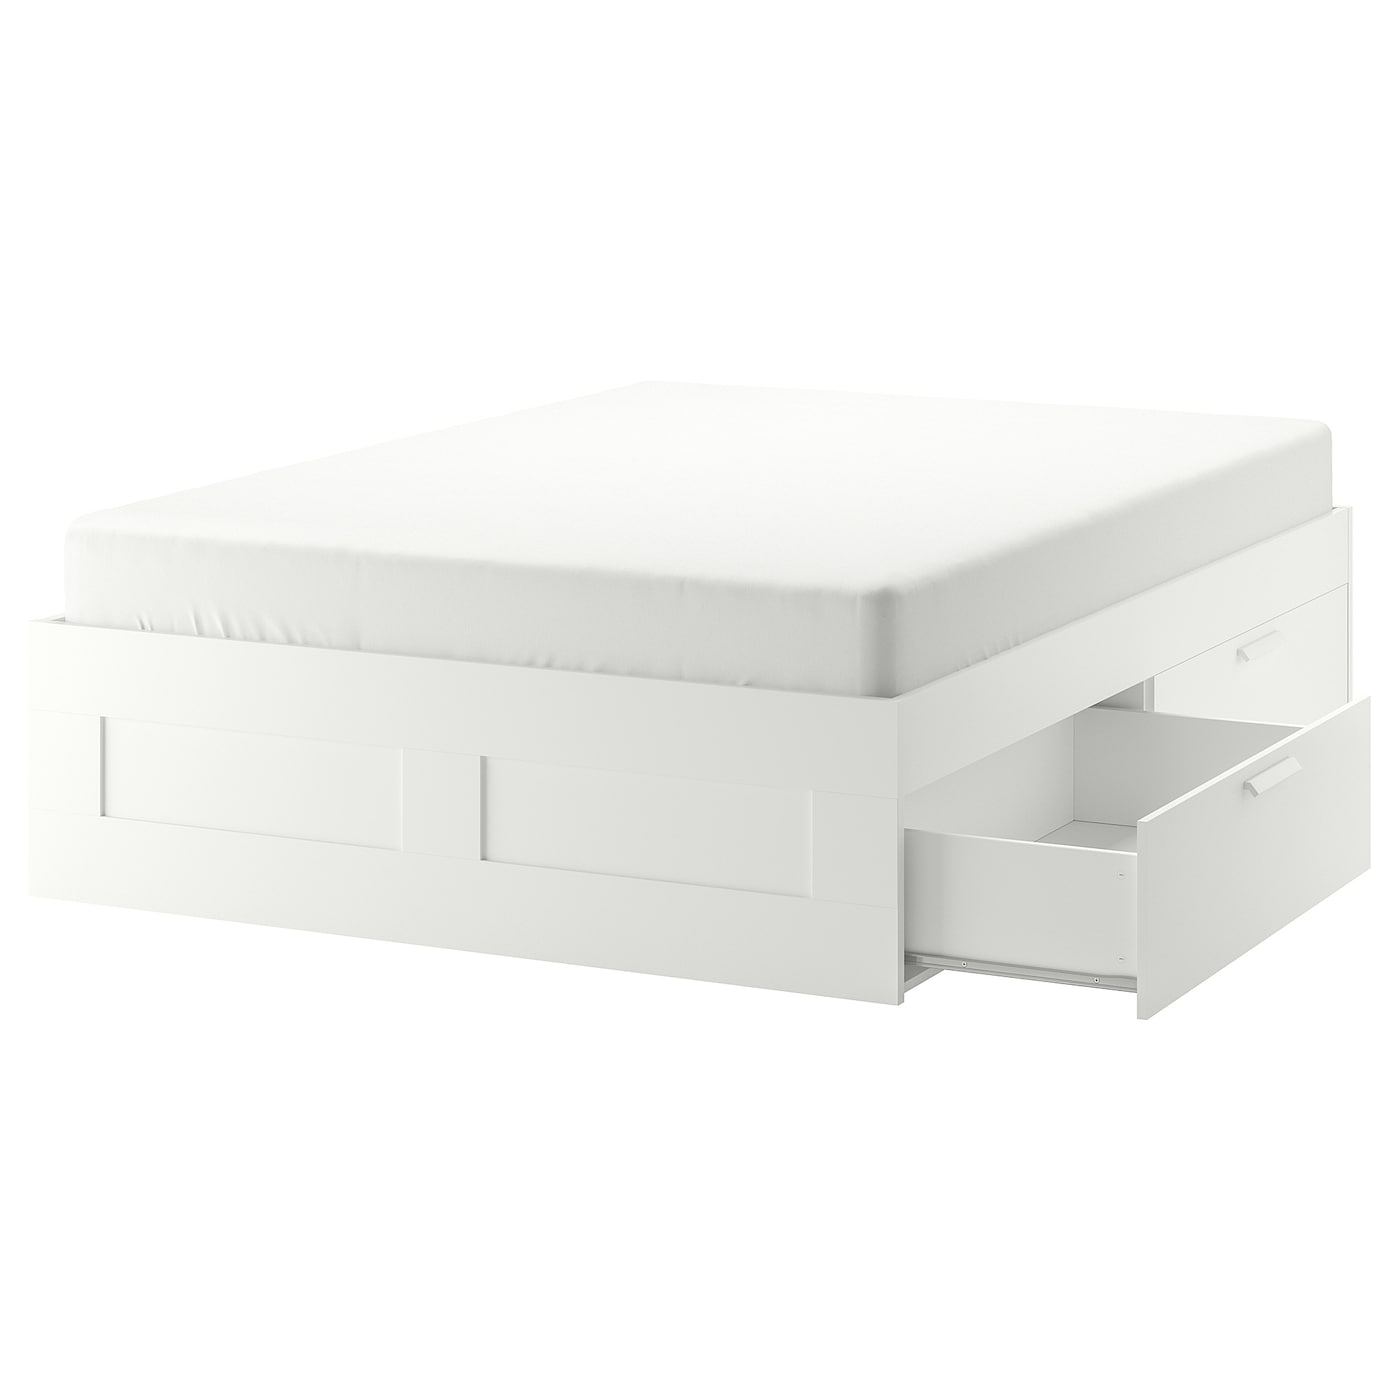 Каркас кровати с ящиками - IKEA BRIMNES/LÖNSET/LONSET, 140х200 см, белый, БРИМНЭС/БРИМНЕС/ЛОНСЕТ ИКЕА